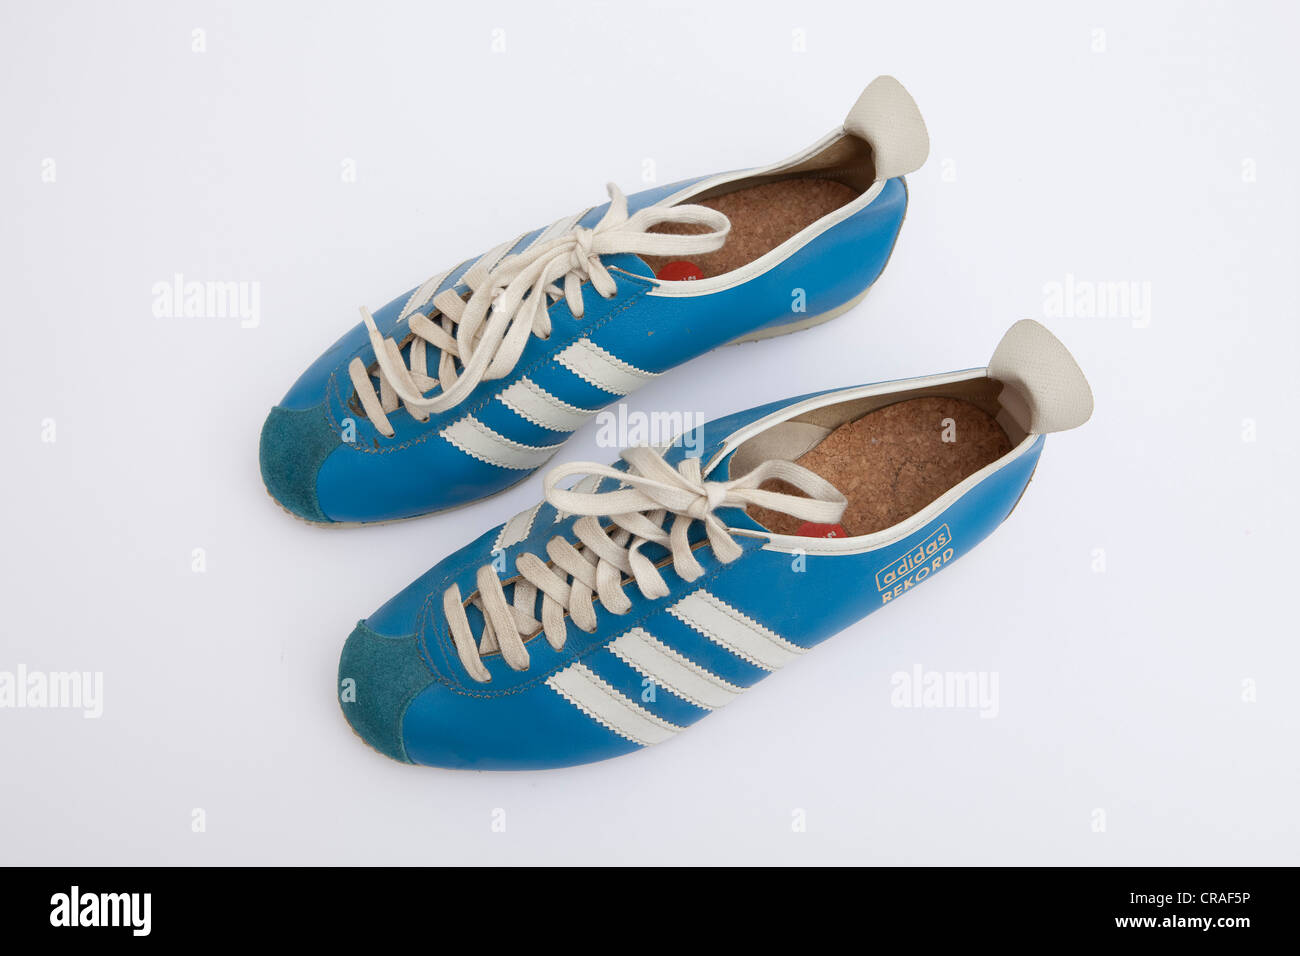 Adidas chaussures de sport, 500 l'ancien modèle des années 60 Photo Stock -  Alamy